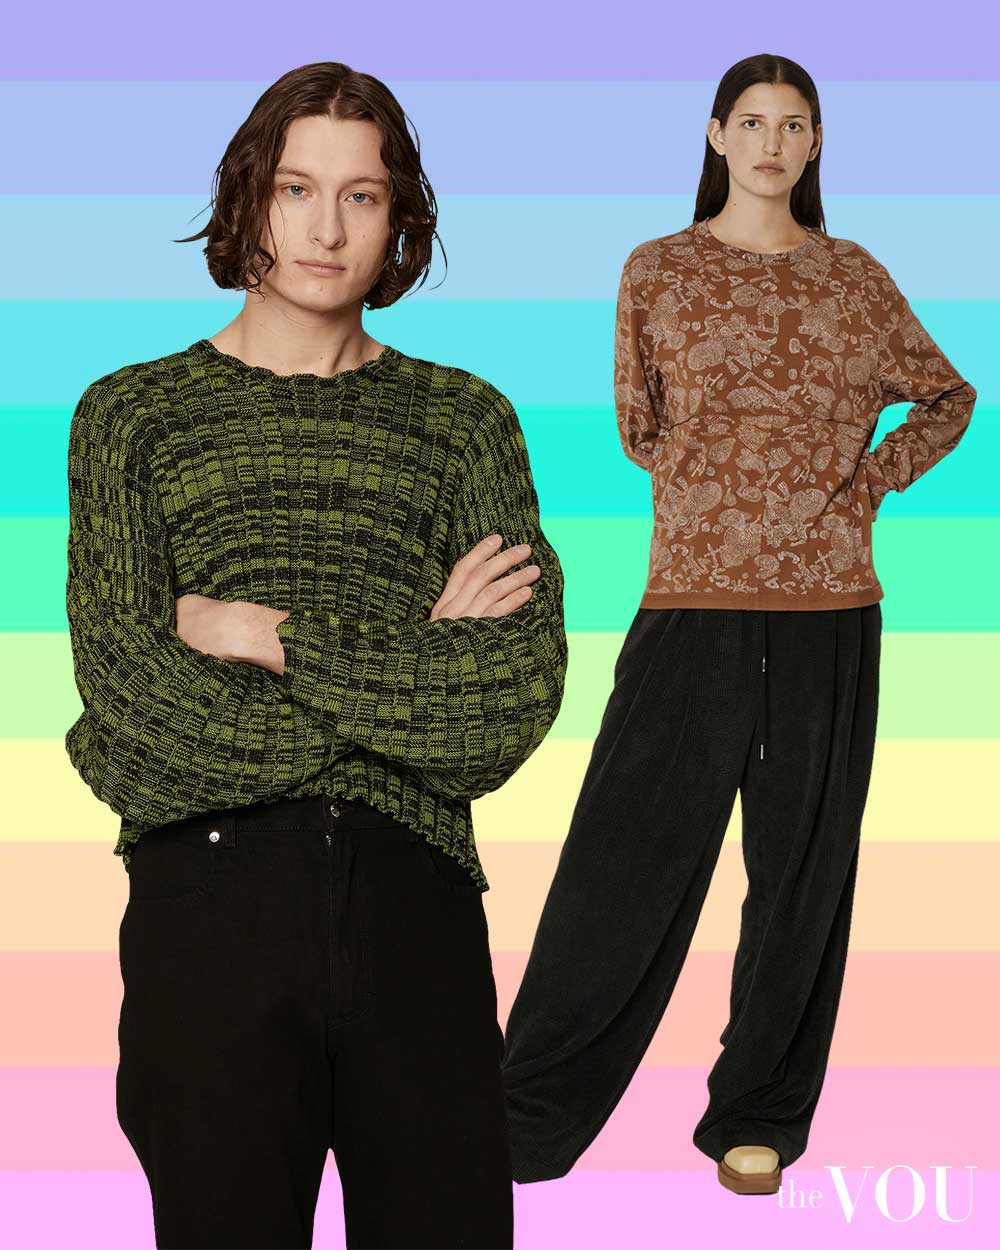 Eckhaus Latta Gender Neutral Clothing